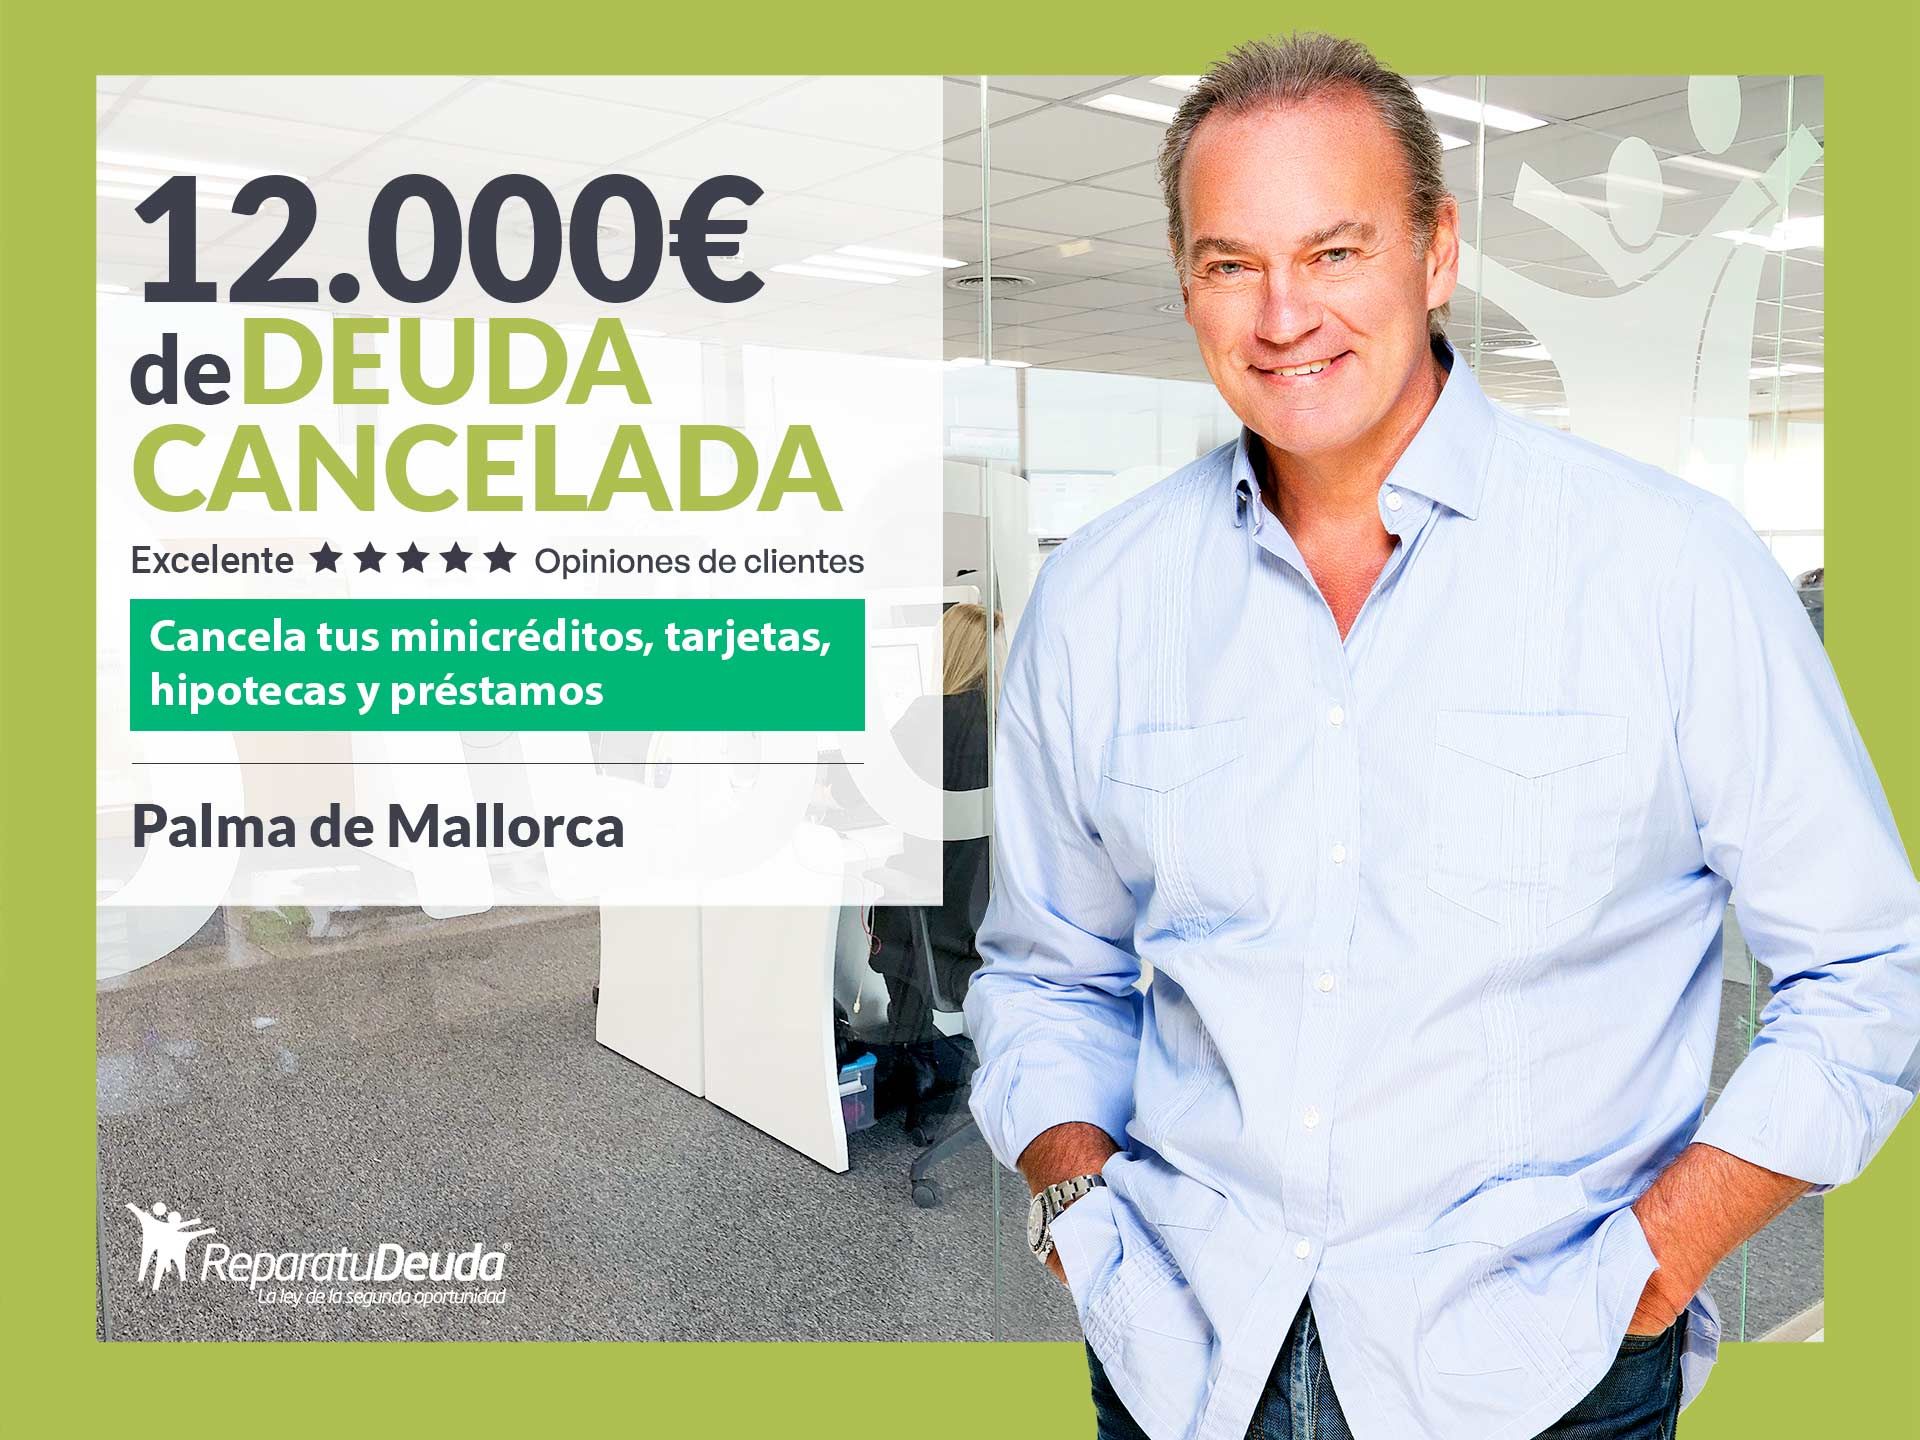 Repara tu Deuda Abogados cancela 12.000? en Palma de Mallorca (Baleares) con la Ley de Segunda Oportunidad